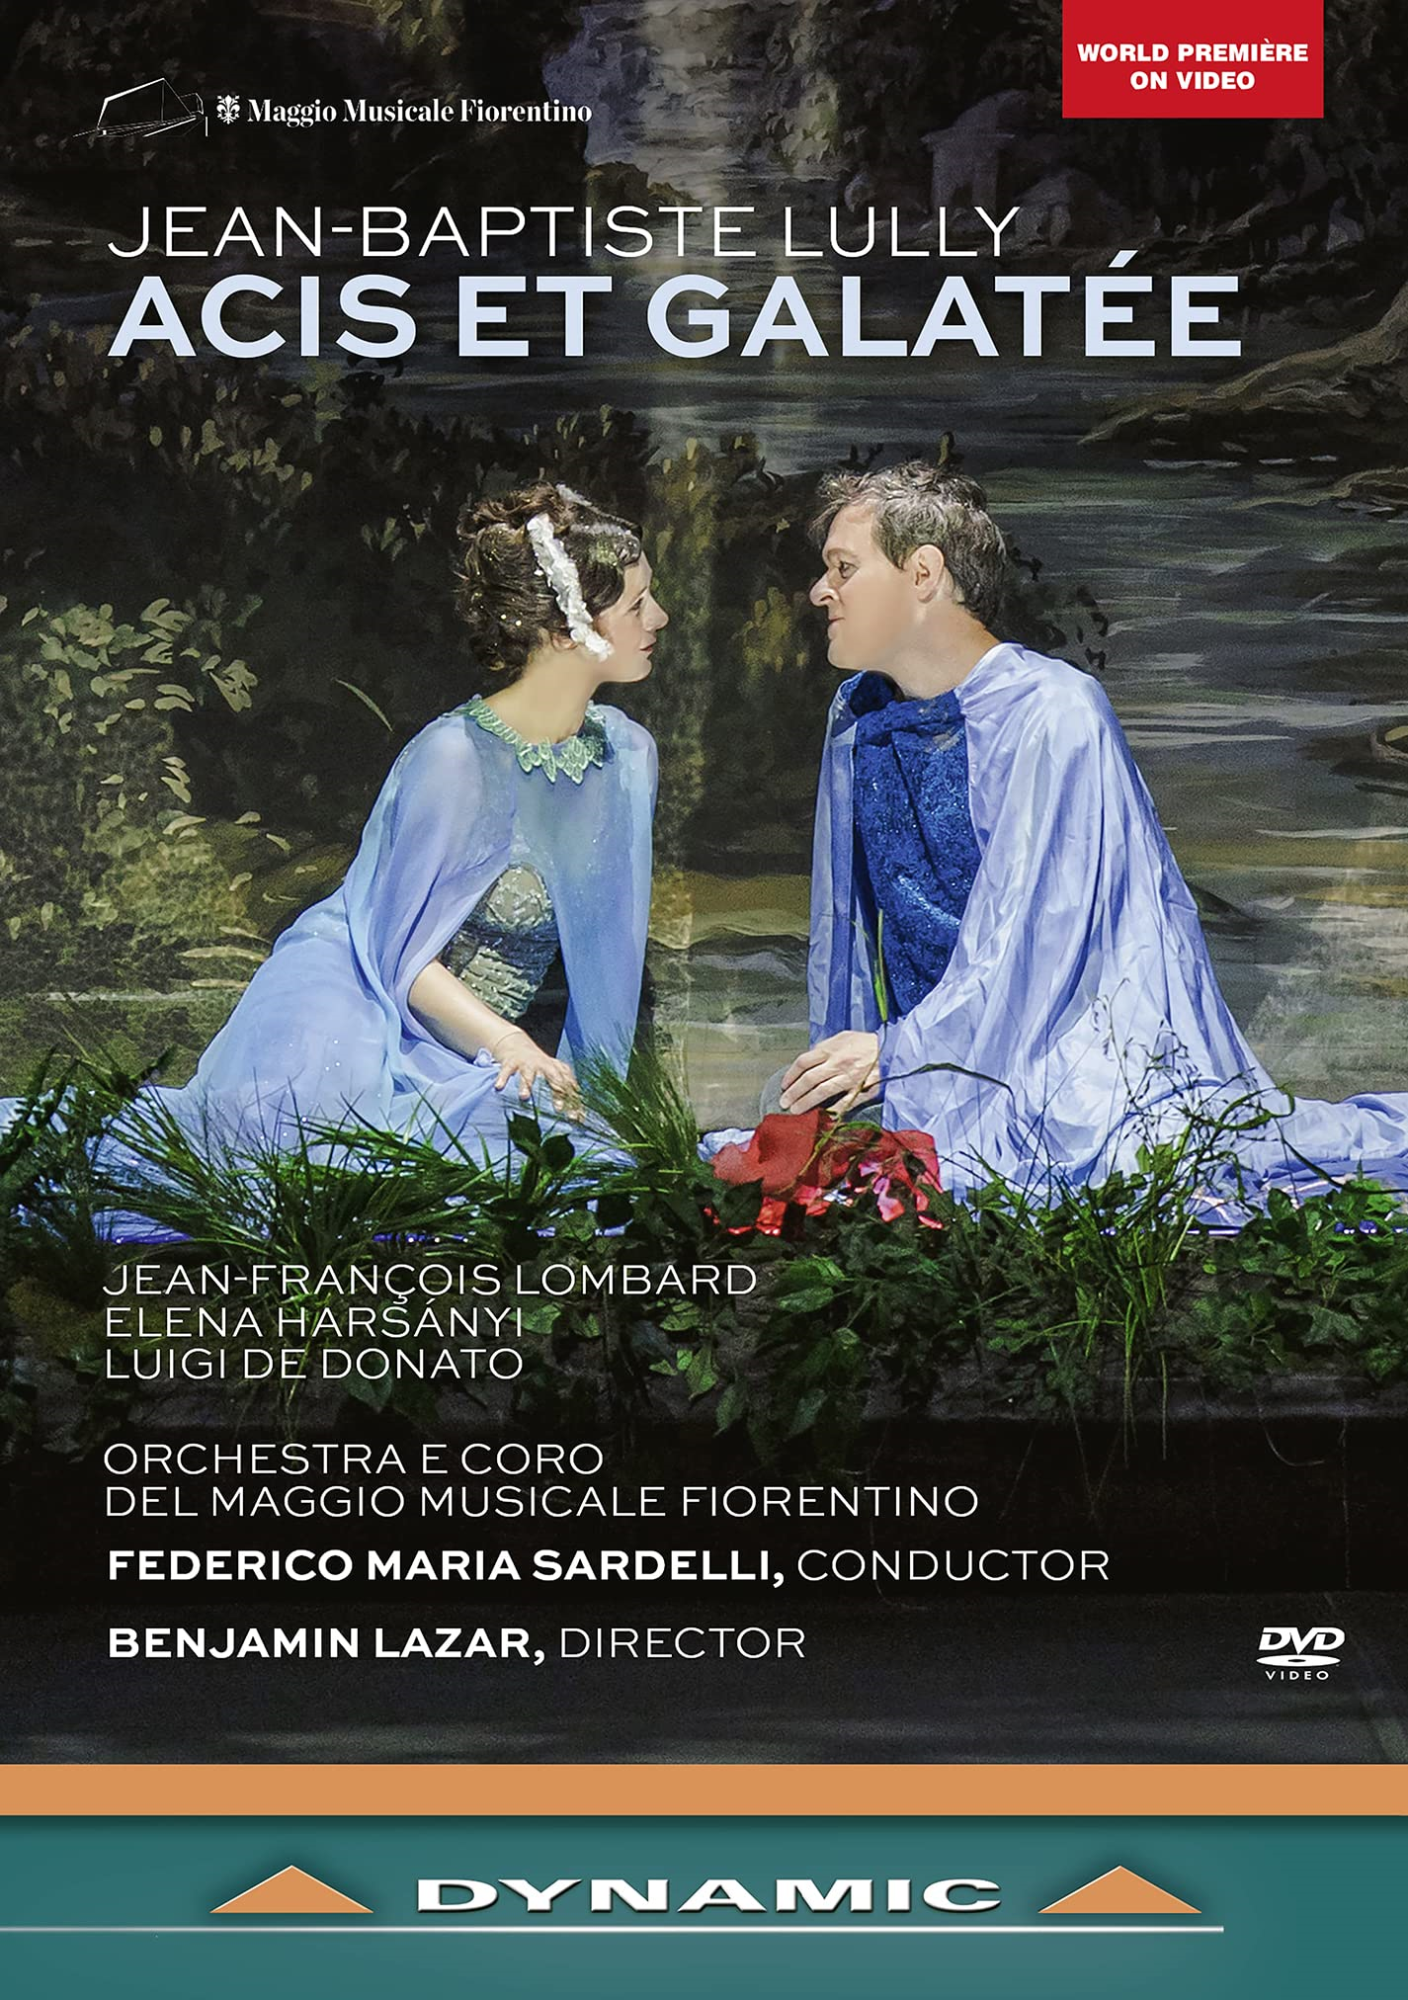 Music Dvd Jean-Baptiste Lully - Acis Et Galatee NUOVO SIGILLATO, EDIZIONE DEL 13/04/2023 SUBITO DISPONIBILE